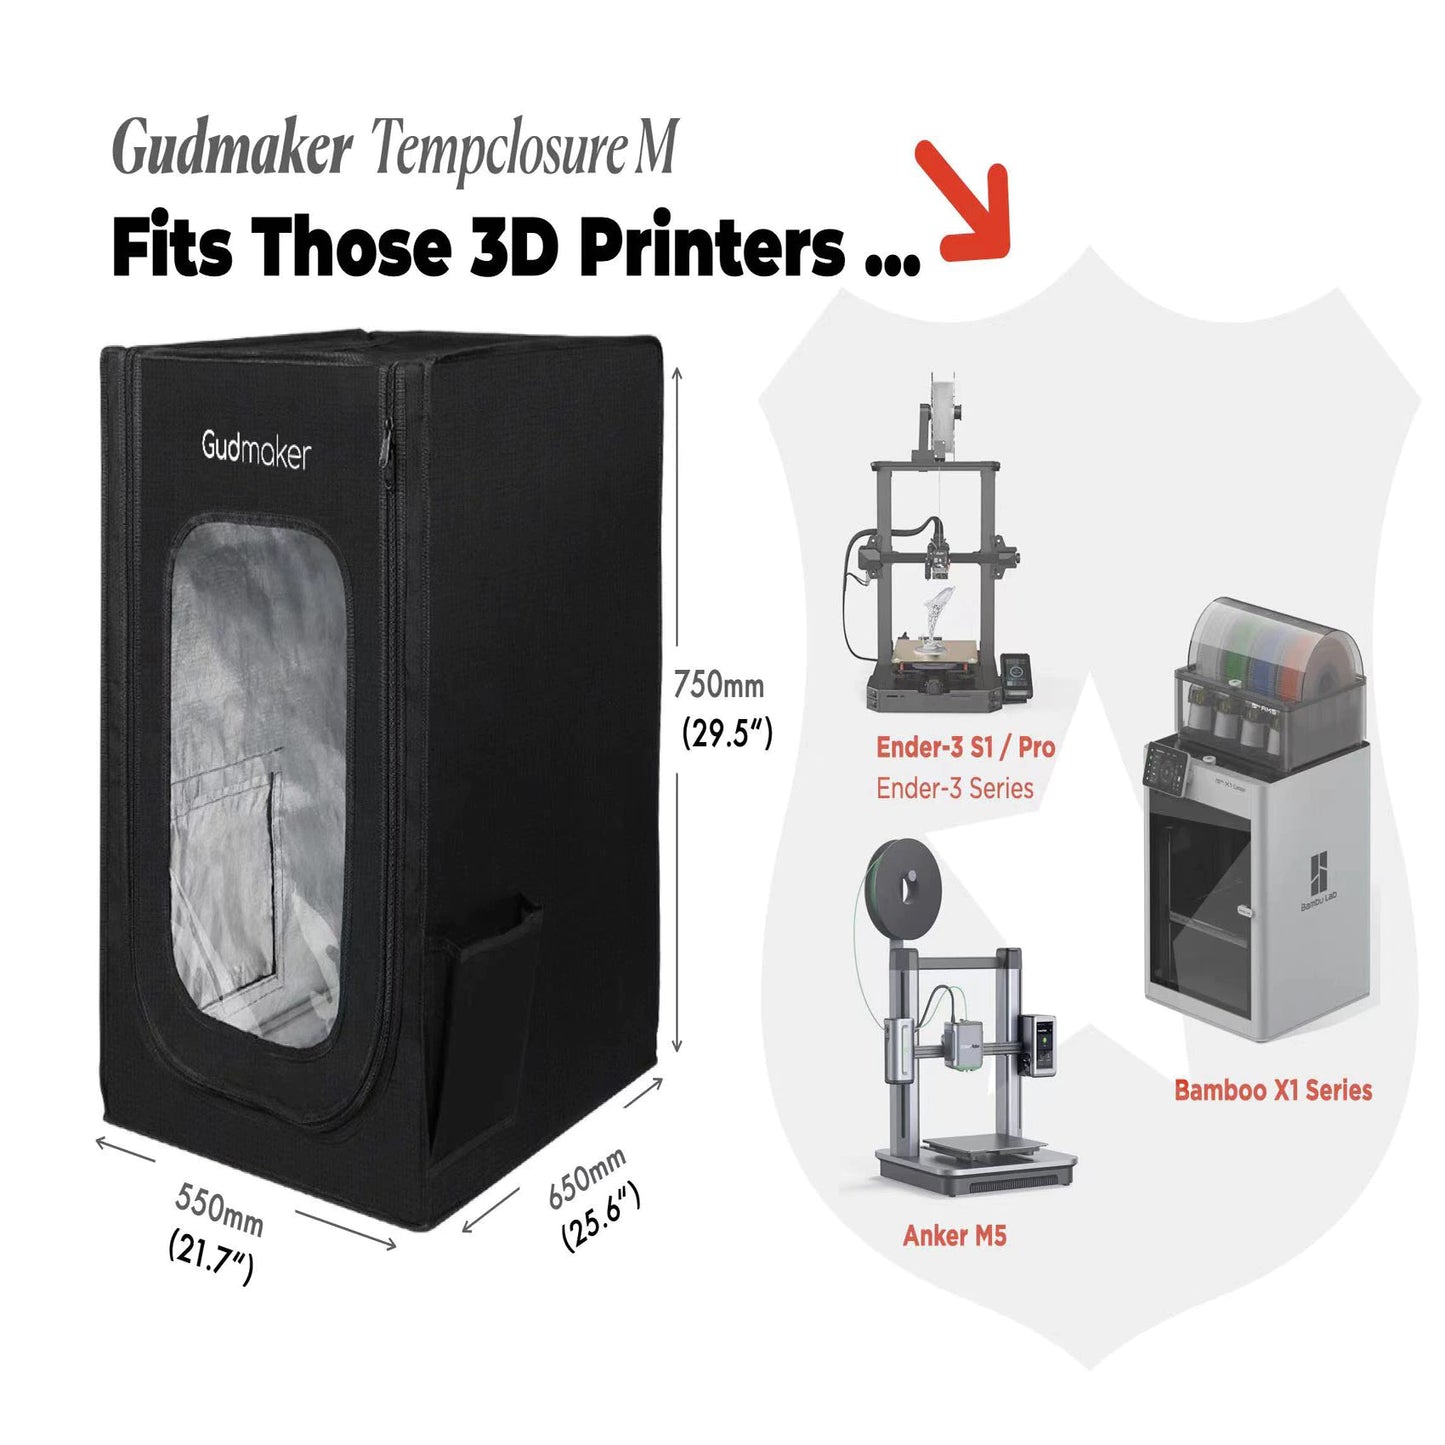 Gudmaker Fireproof and Dustproof 3D Printer Enclosure 3D Printer Tent for Ender 3 S1 Pro /Ender 3 Pro/Ender 3 V2/Ender 5 Pro